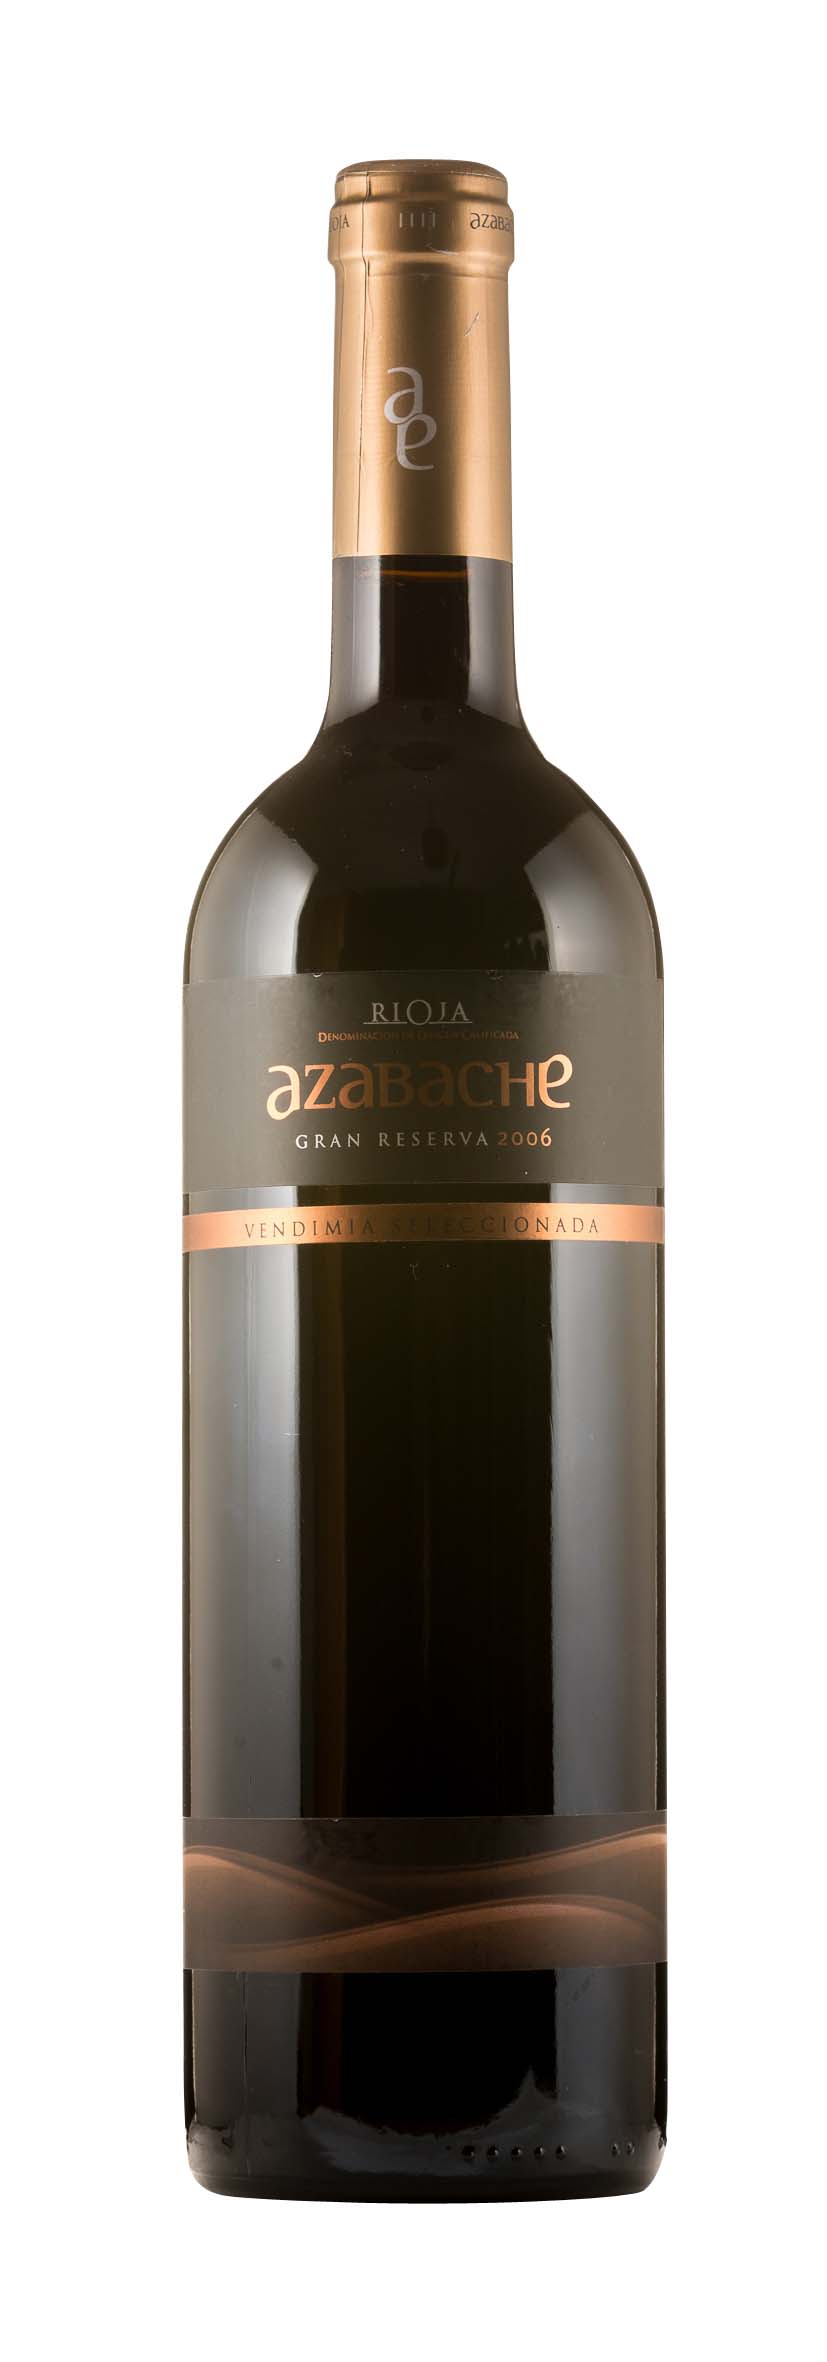 Rioja DOCa Abazache Gran Reserva 2006